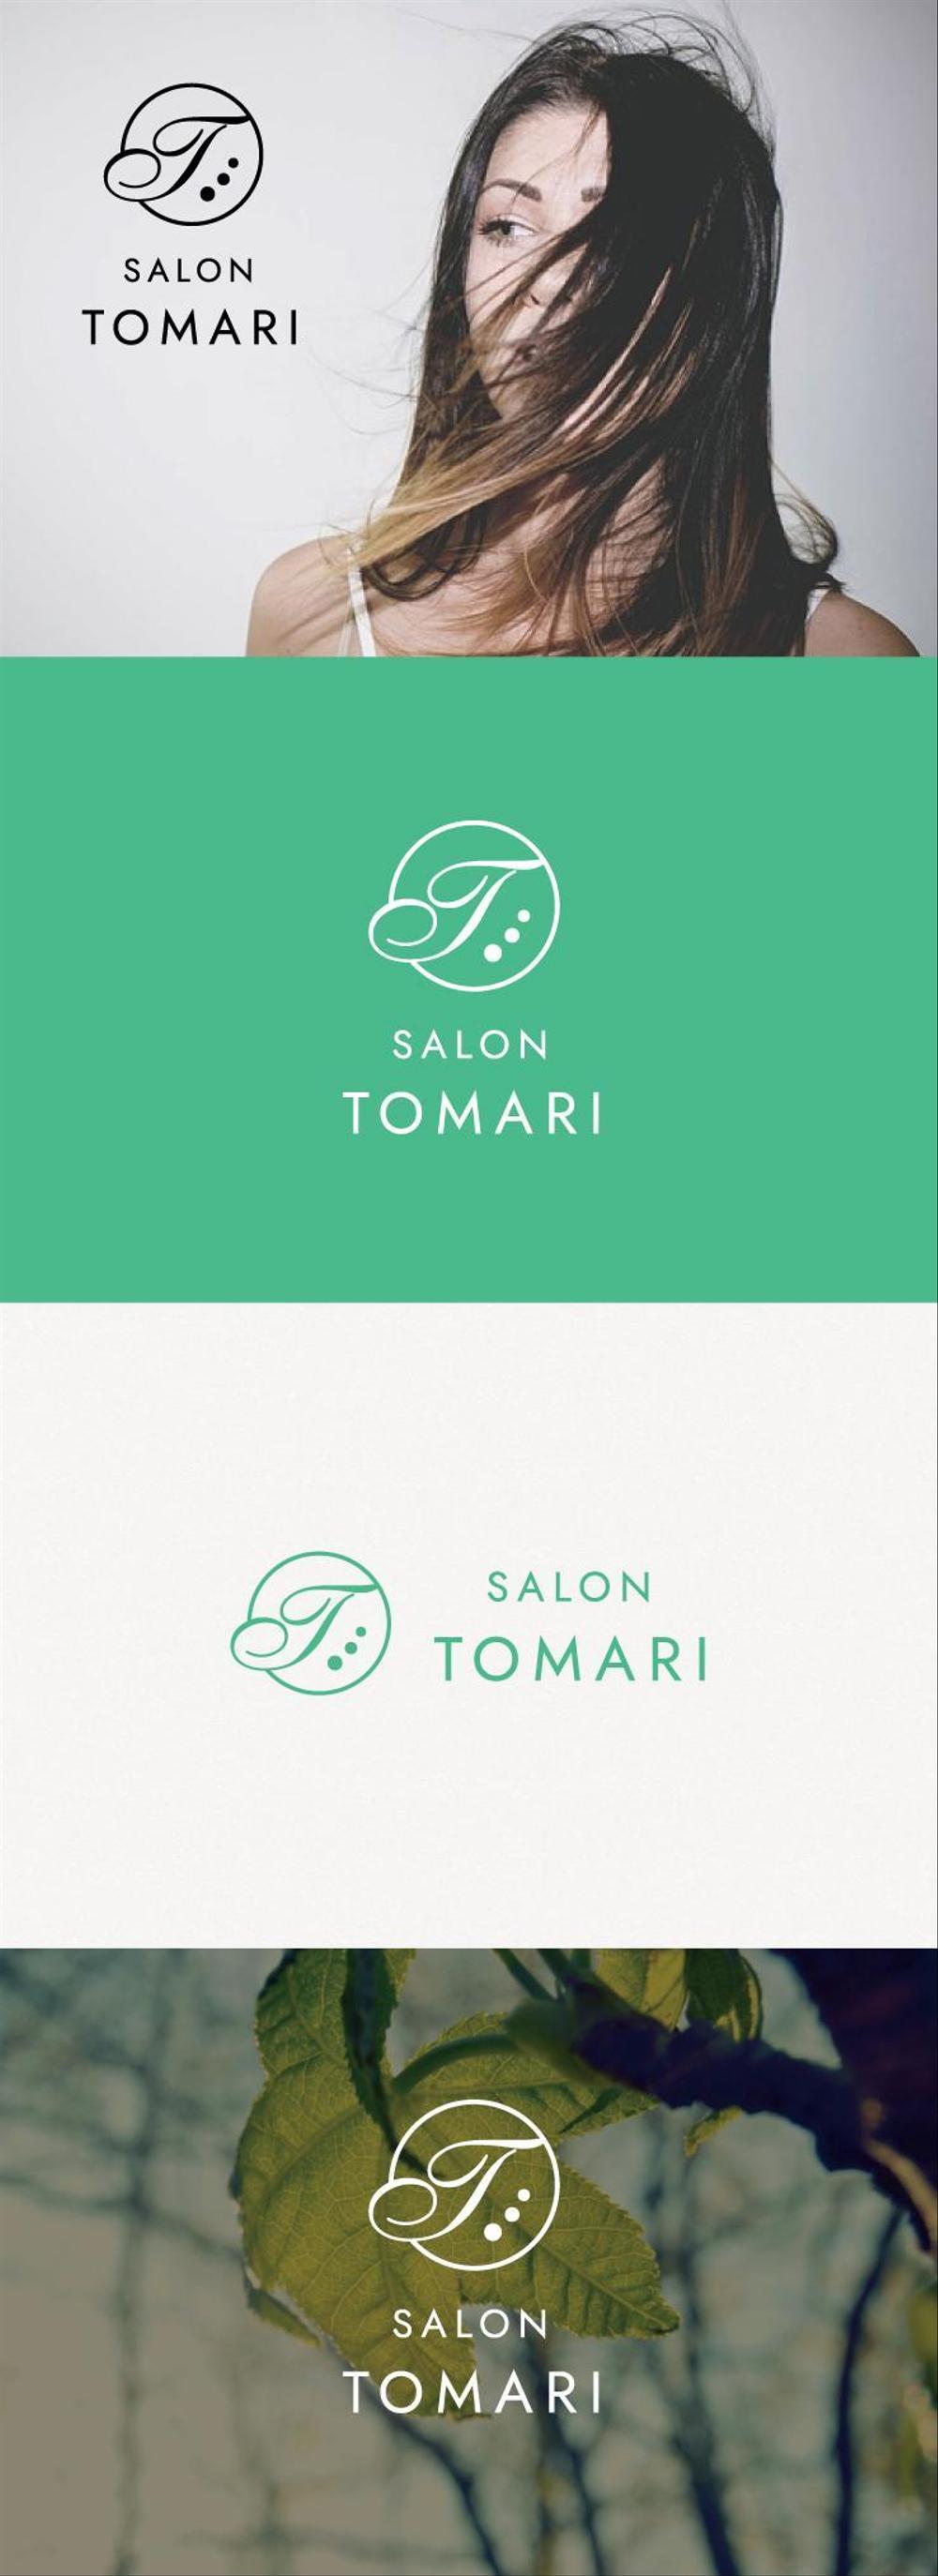 理容店「SALON TOMARI」のロゴ